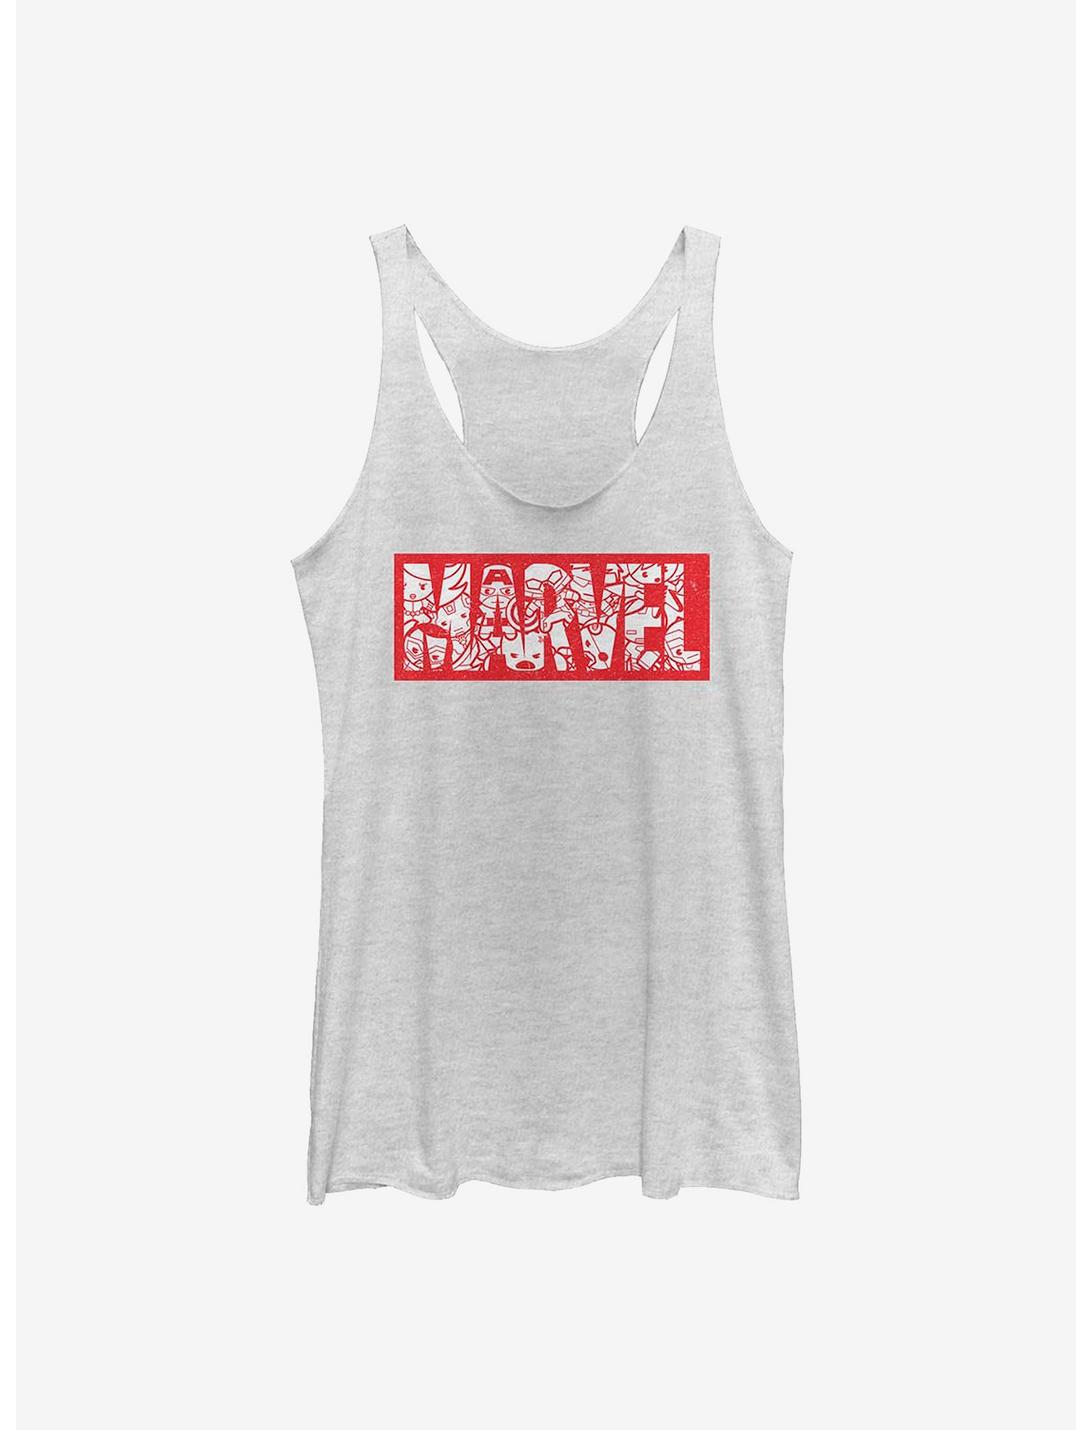 Marvel Avengers Kawaii Marvel Womens Tank Top, WHITE HTR, hi-res